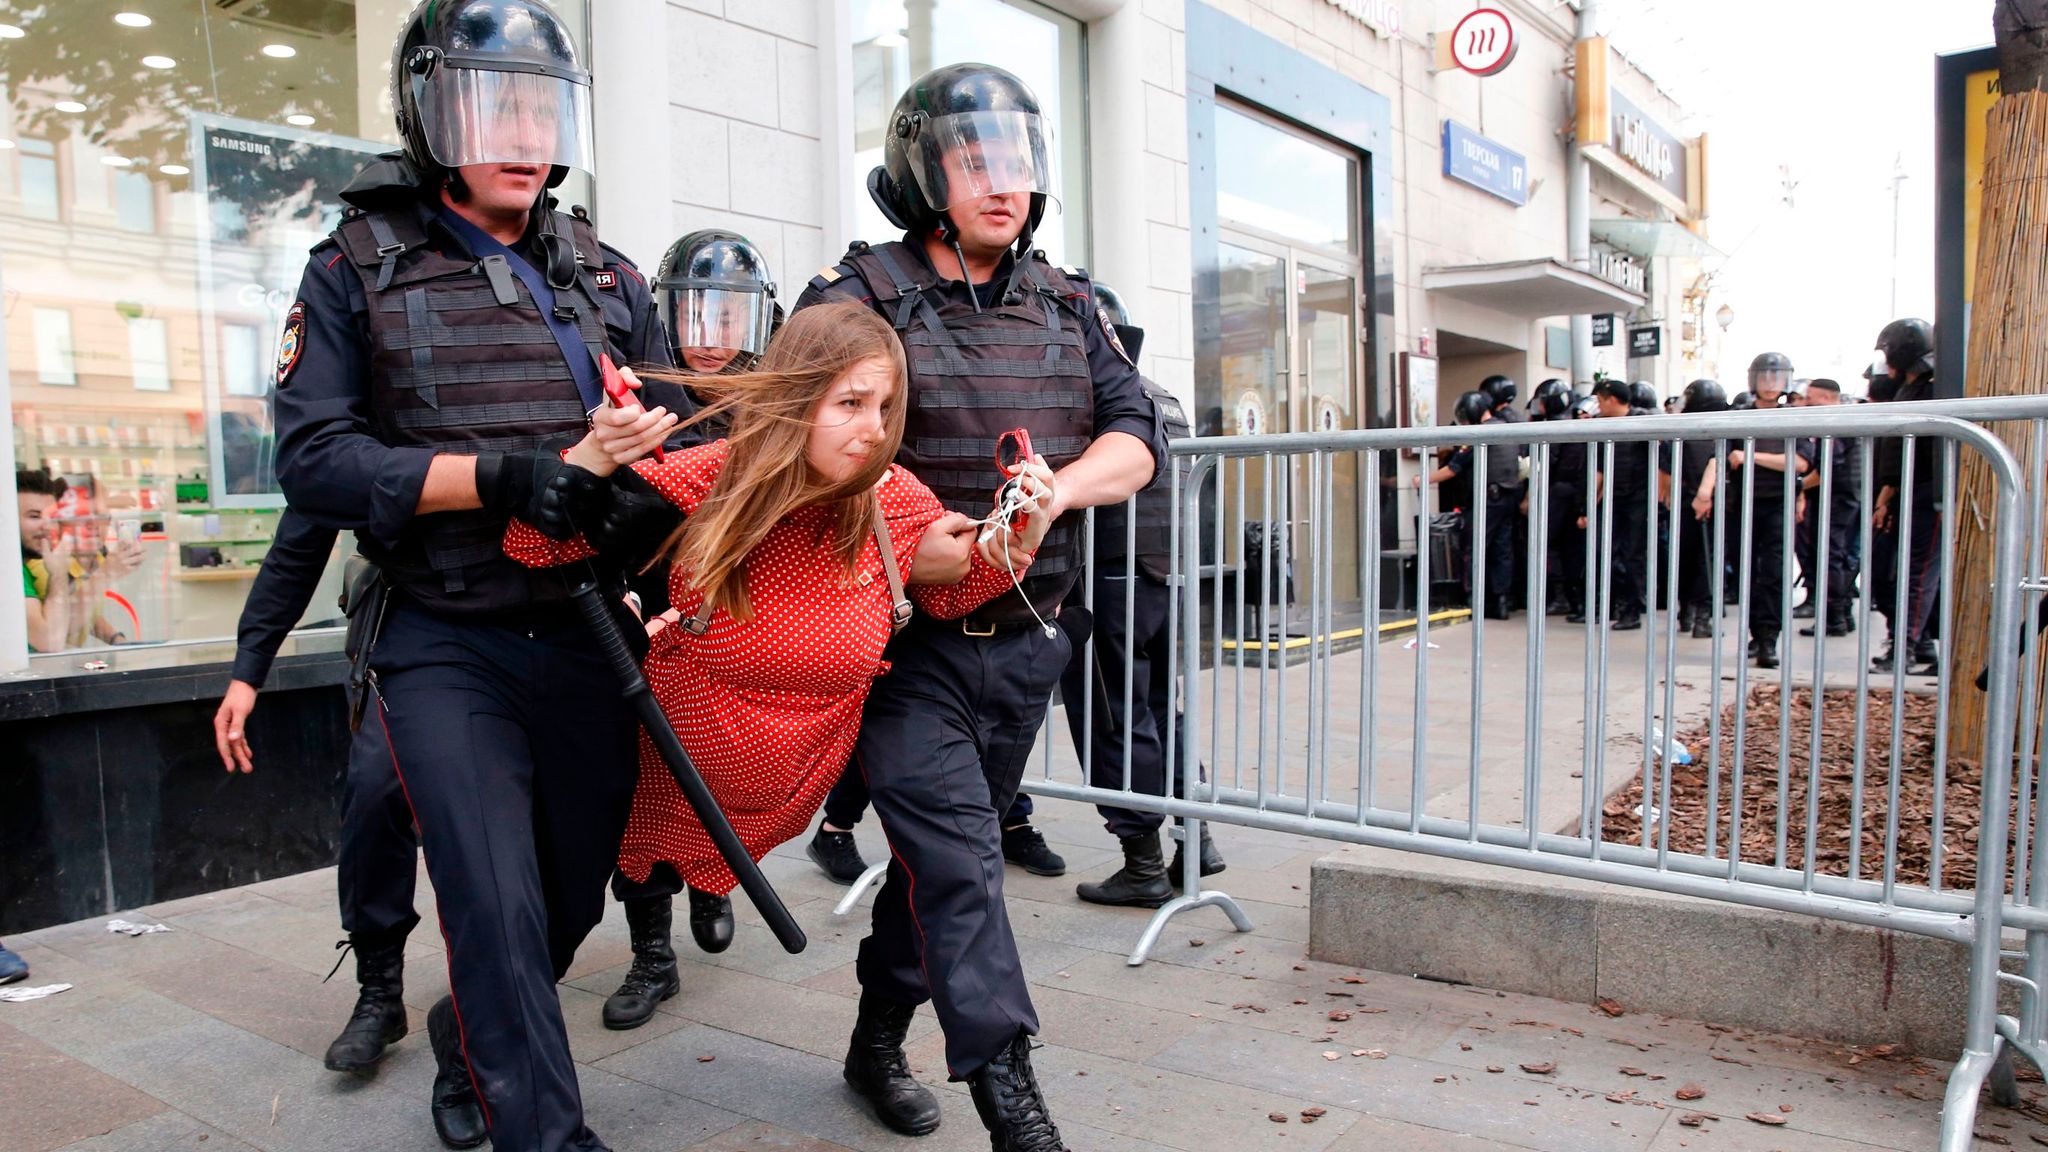 Действия против власти. Задержание на митинге в Москве. Полицейские бьют людей на митинге.